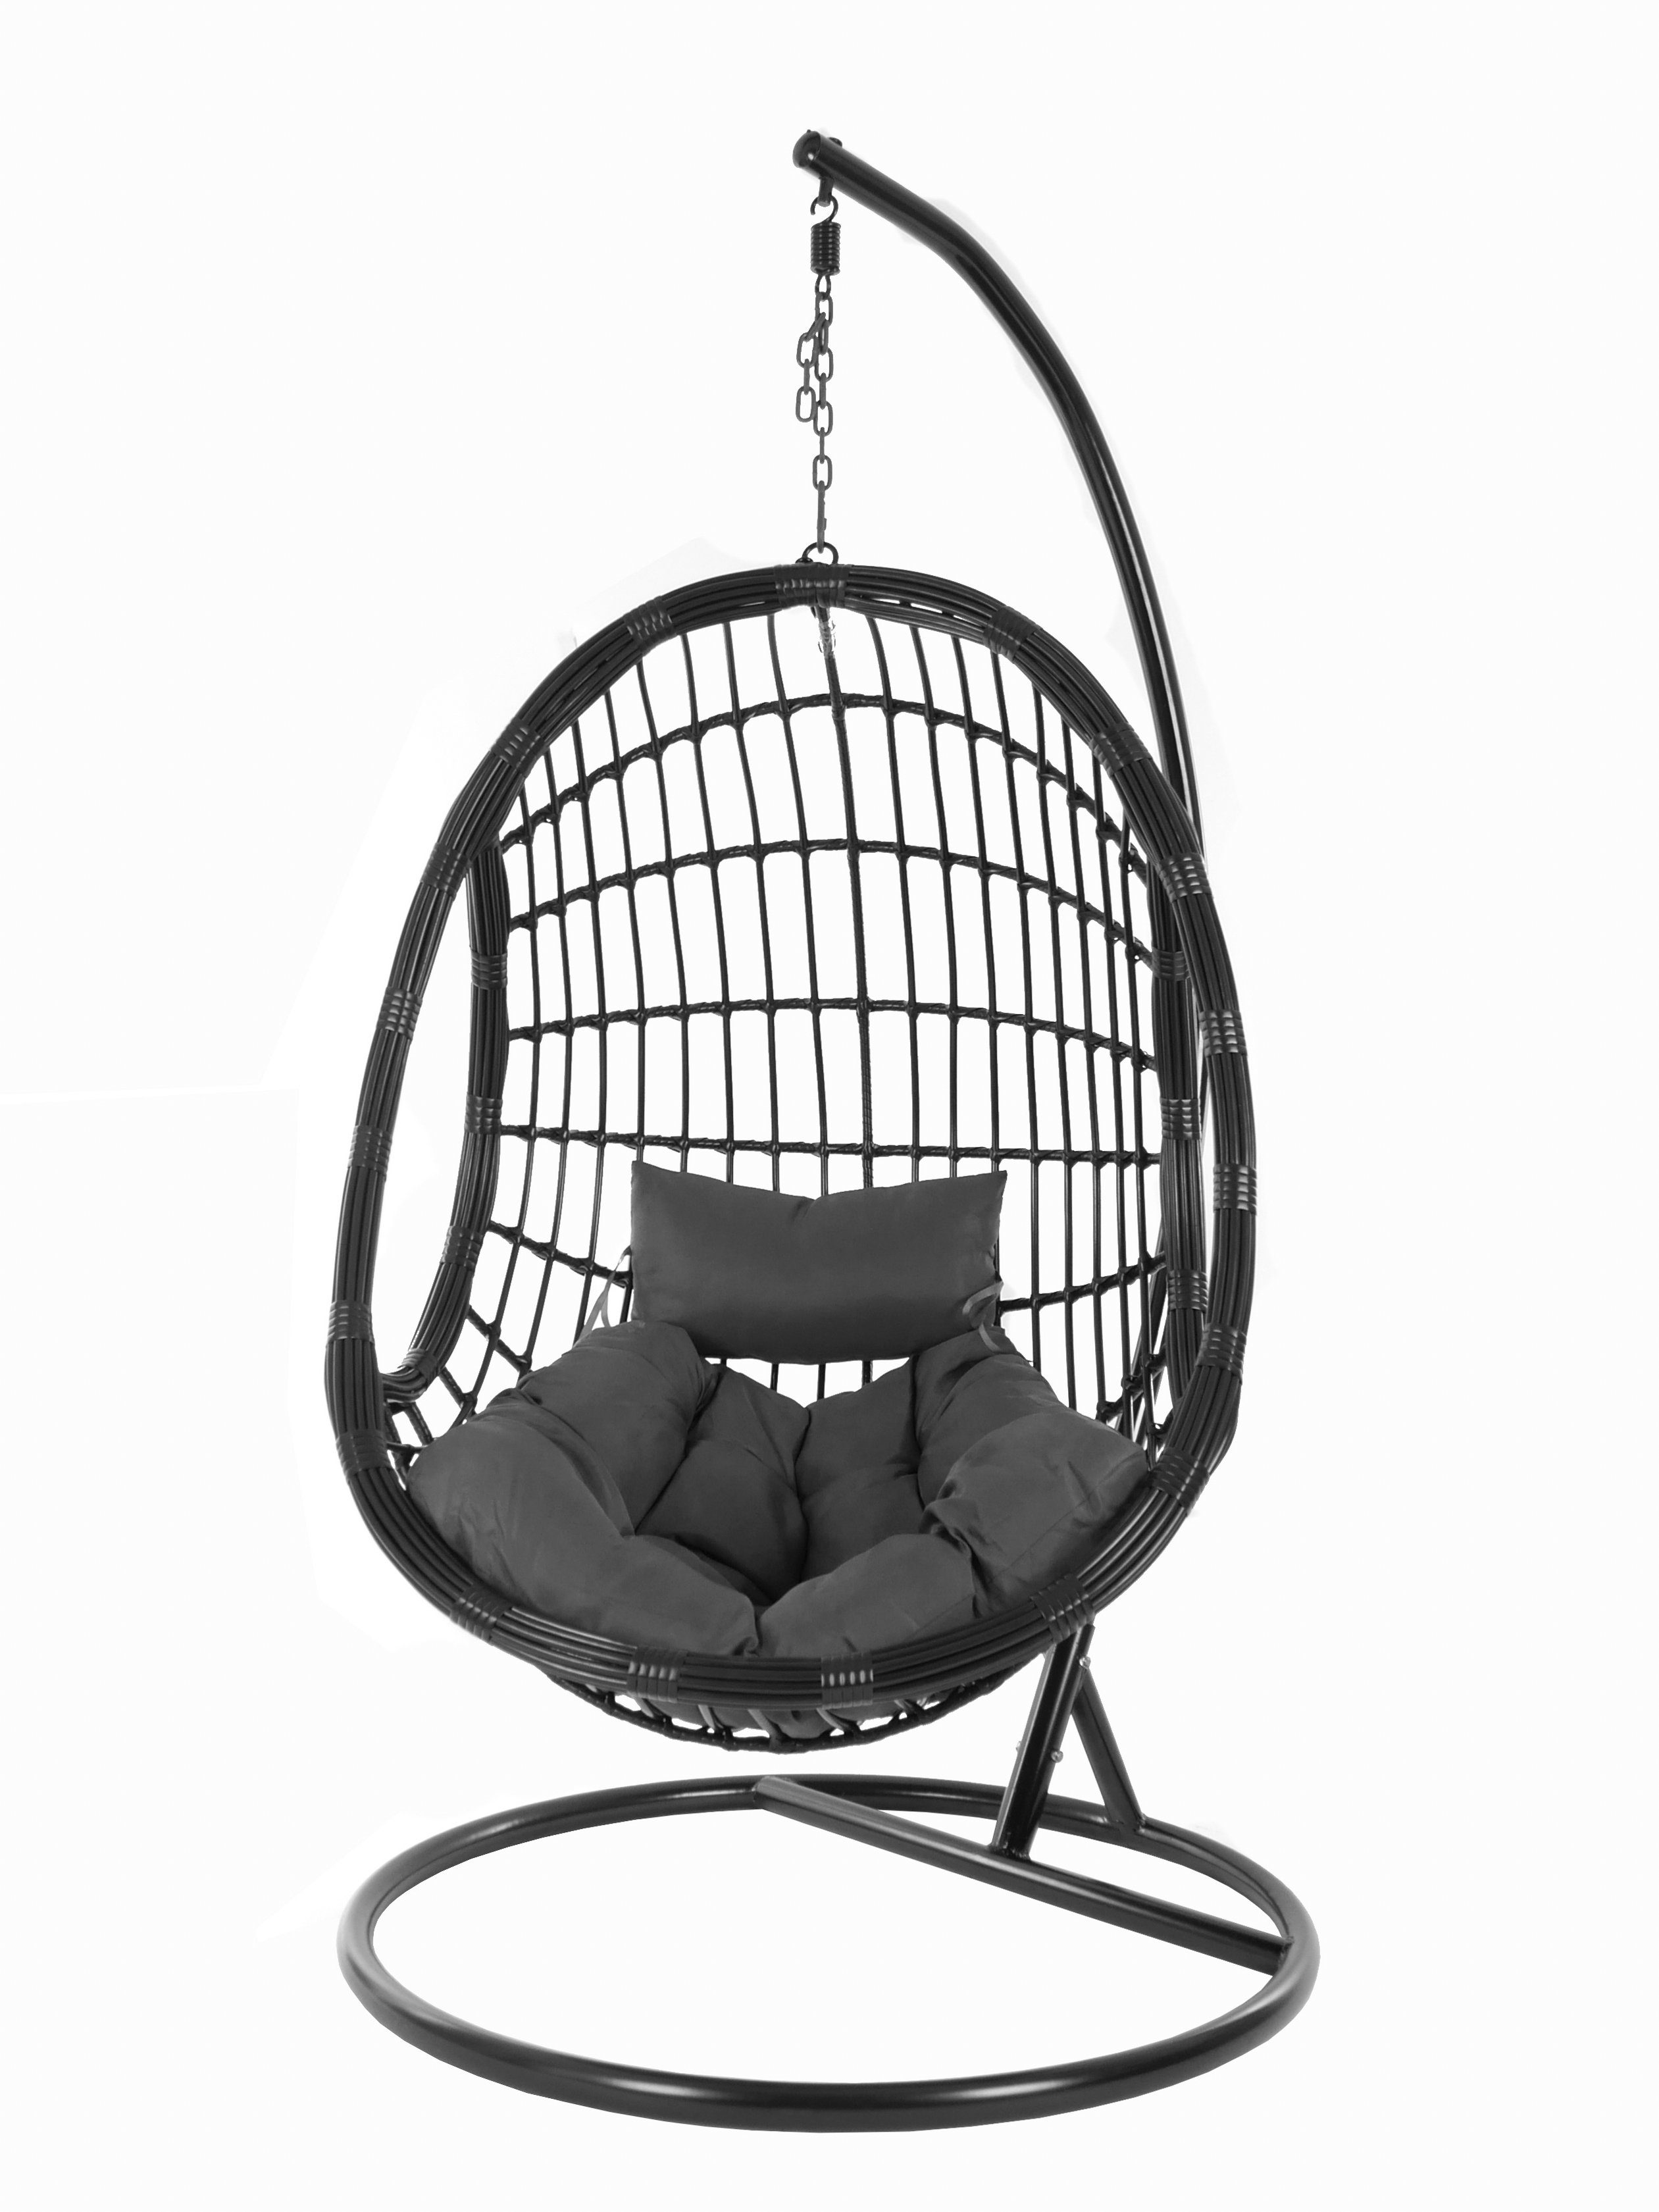 Loungemöbel, Swing Hängesessel edles und Schwebesessel, Hängesessel PALMANOVA Chair, Kissen, shadow) KIDEO (8999 schwarz, dunkelgrau black, Gestell Design mit